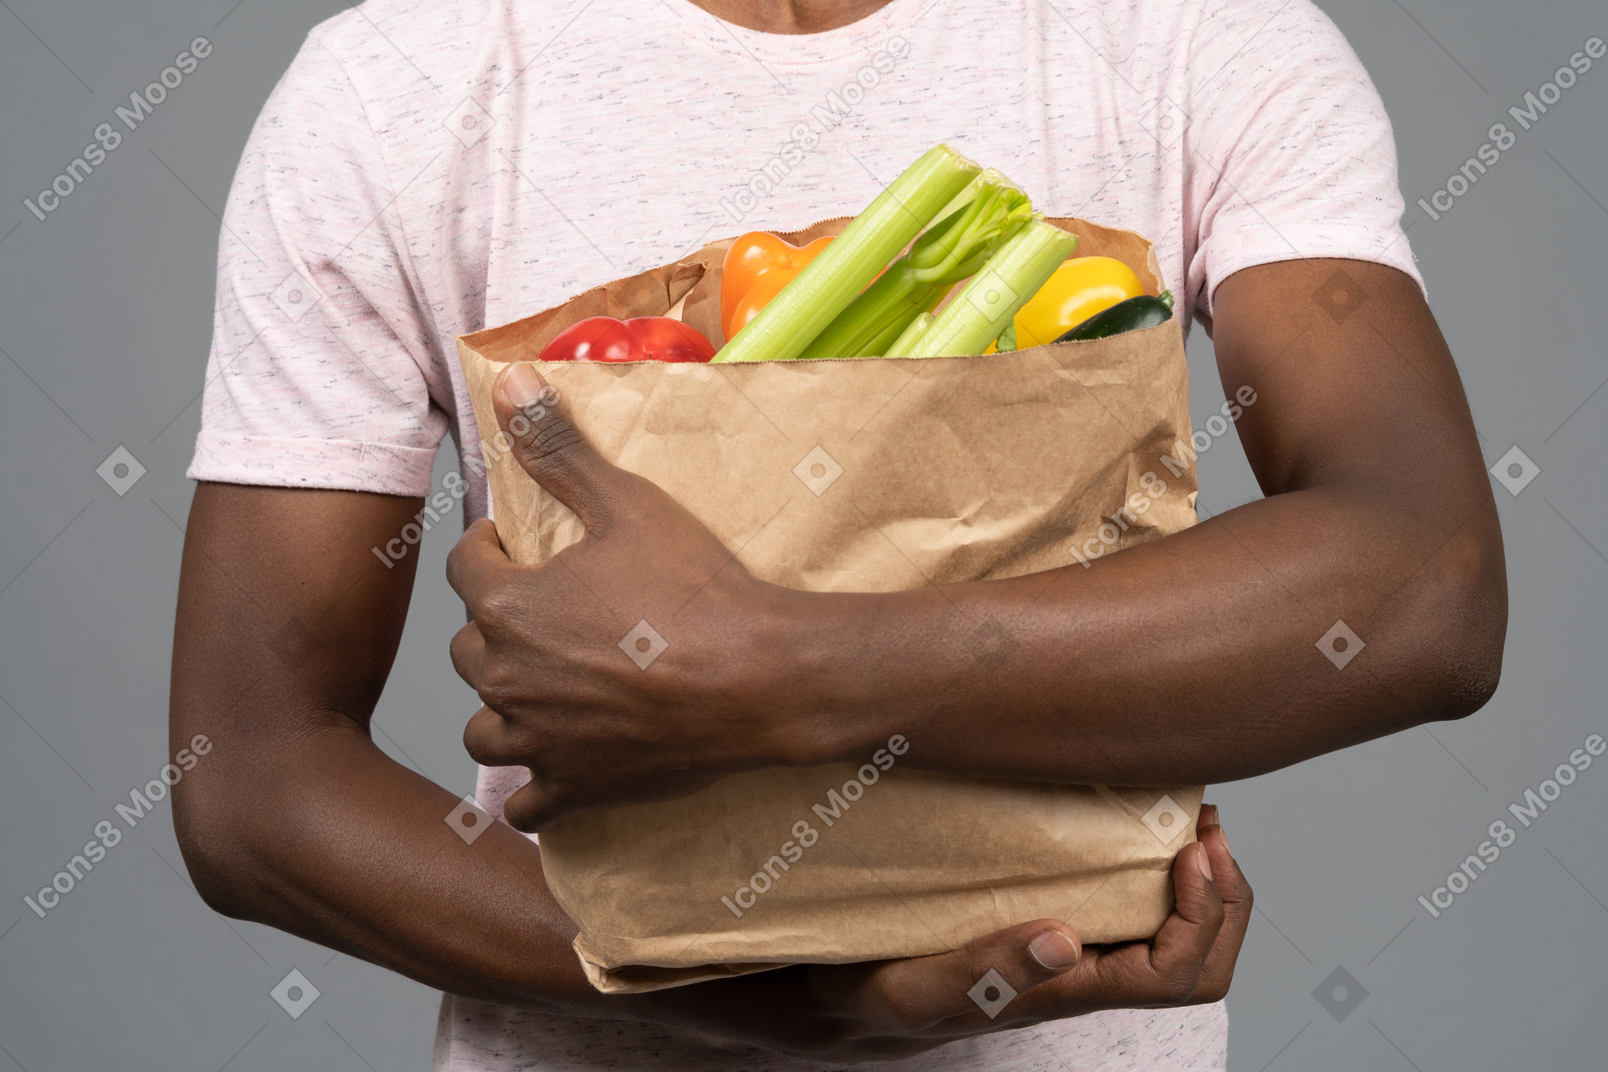 食料品の袋を保持している若い男